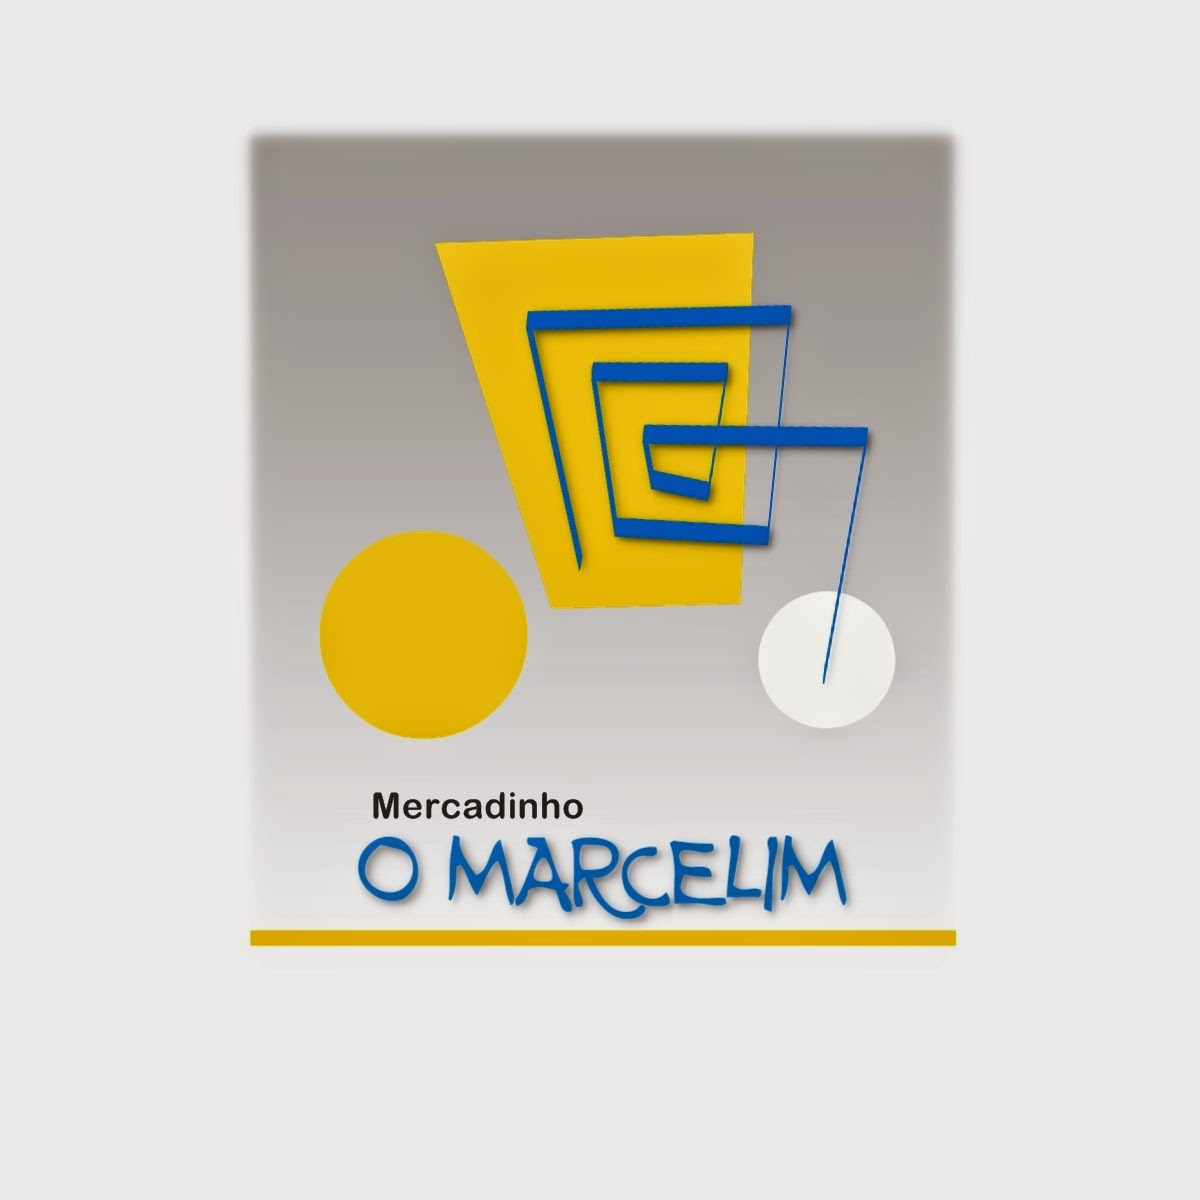 MERCADINHO O MARCELIM